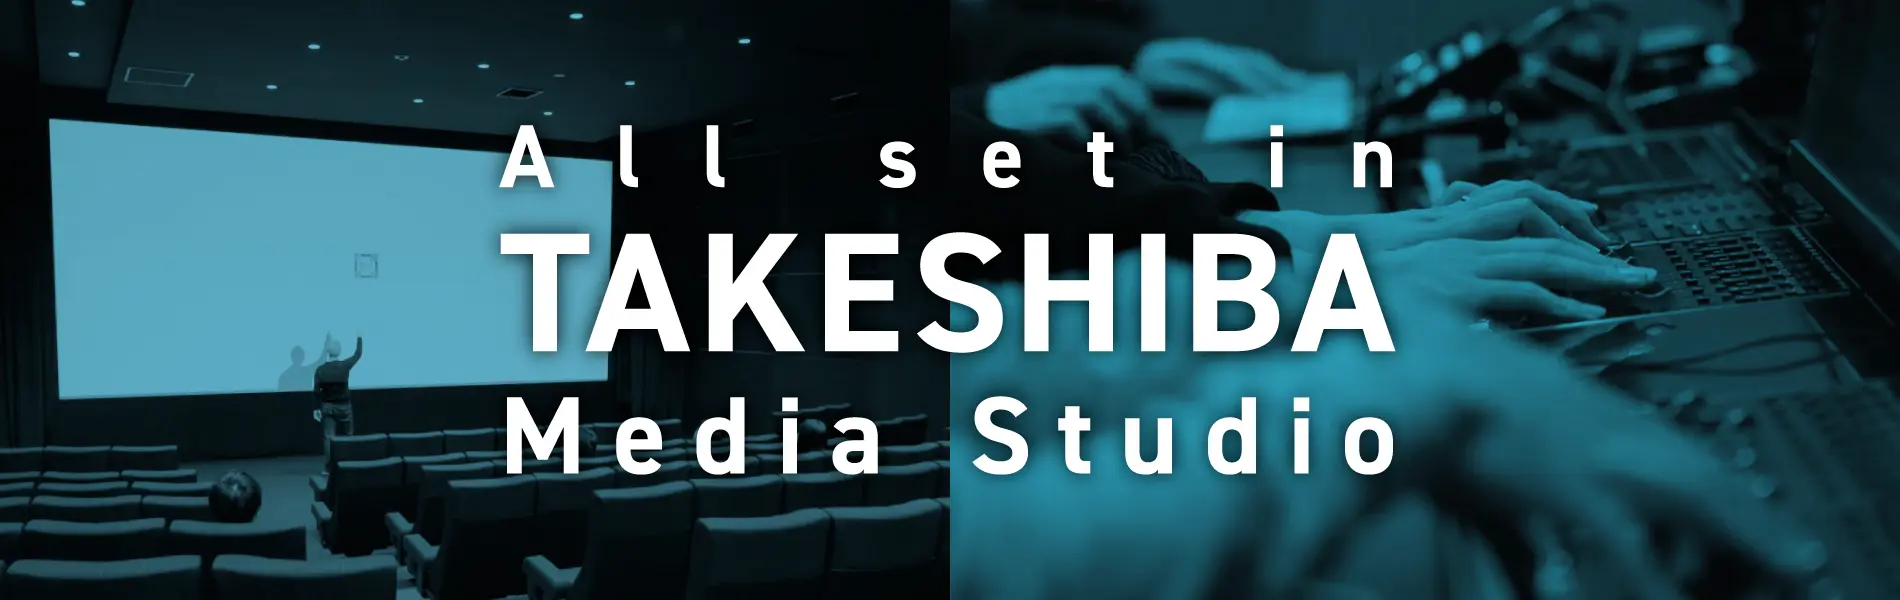 All set in TAKESHIBA Media Studio